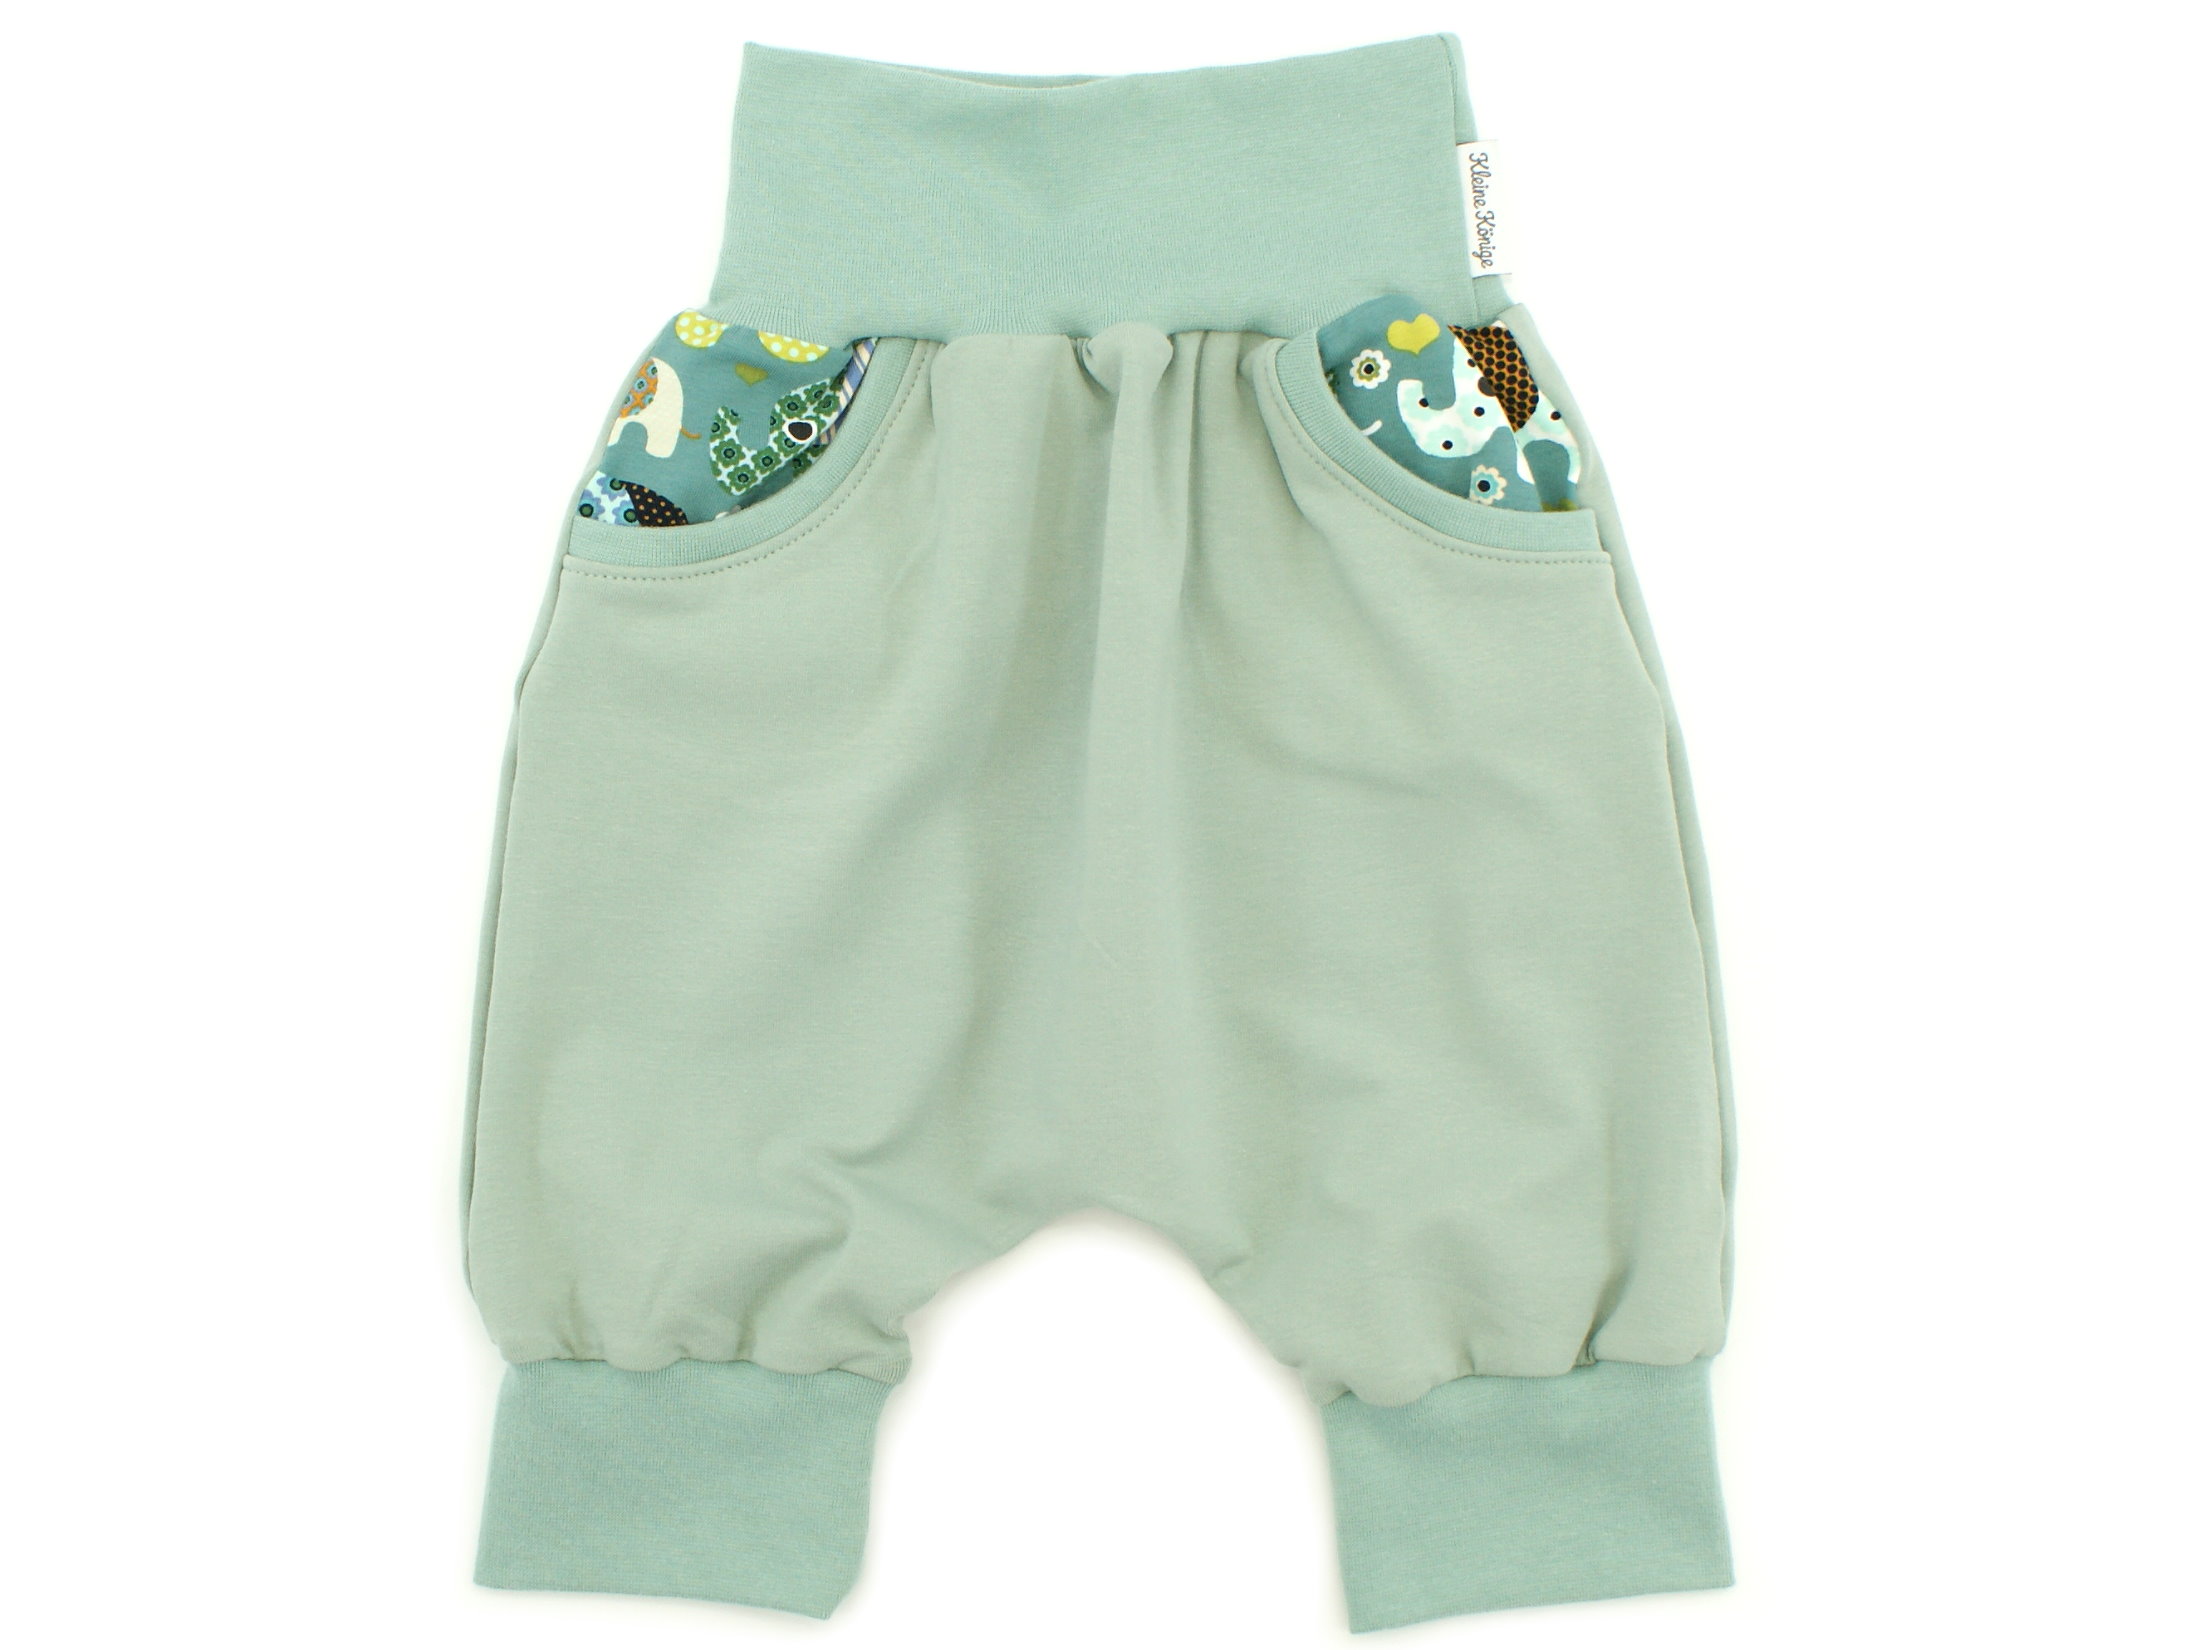 Kinder Bermuda-Shorts mit Taschen "Elefantenparty" petrol mint